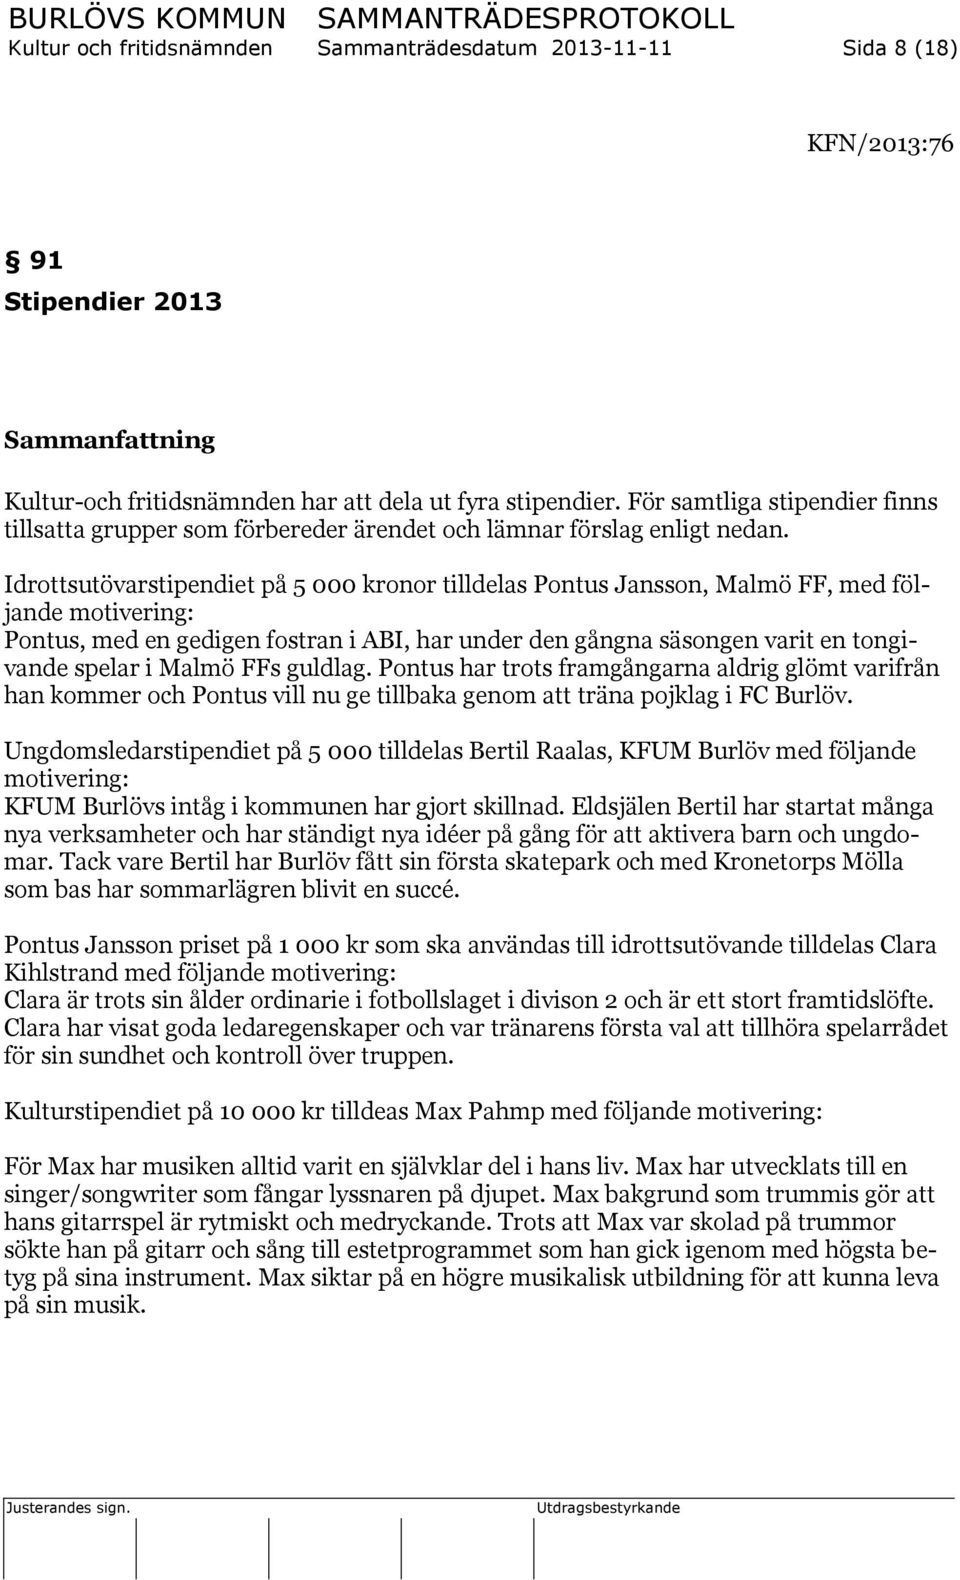 Idrottsutövarstipendiet på 5 000 kronor tilldelas Pontus Jansson, Malmö FF, med följande motivering: Pontus, med en gedigen fostran i ABI, har under den gångna säsongen varit en tongivande spelar i